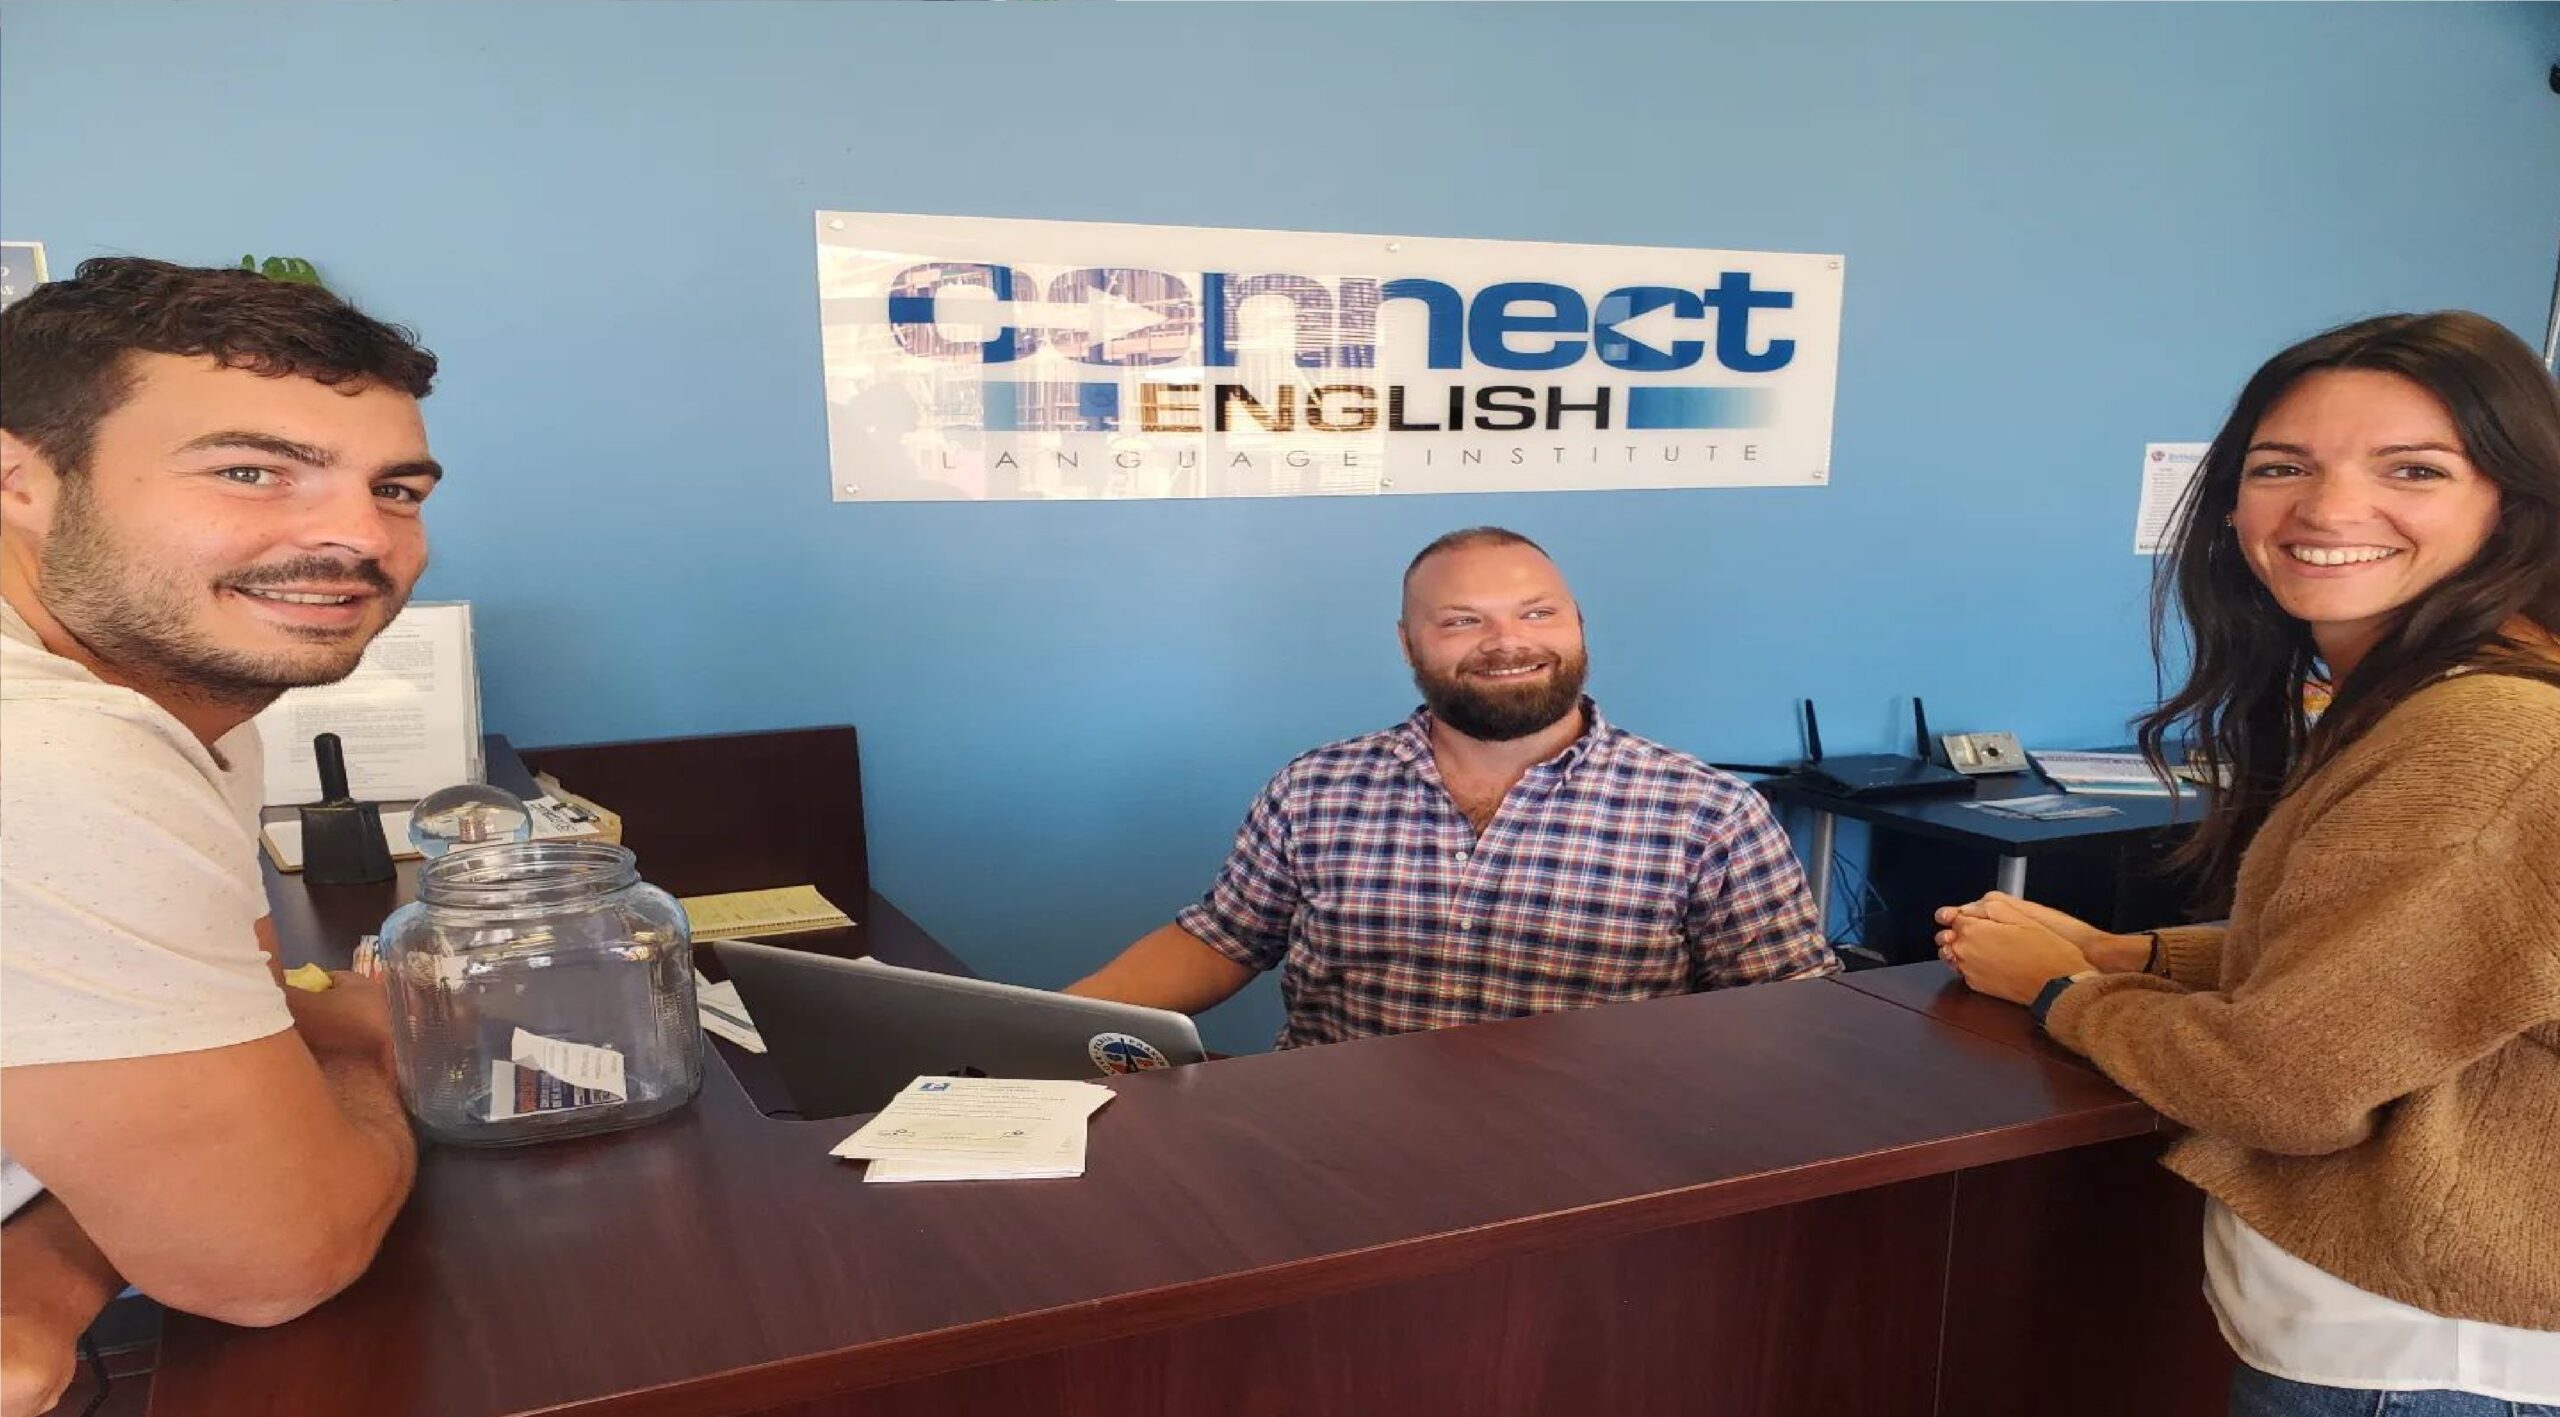 معهد كونيكت لتعليم اللغة الإنجليزية Connect English Language Institute